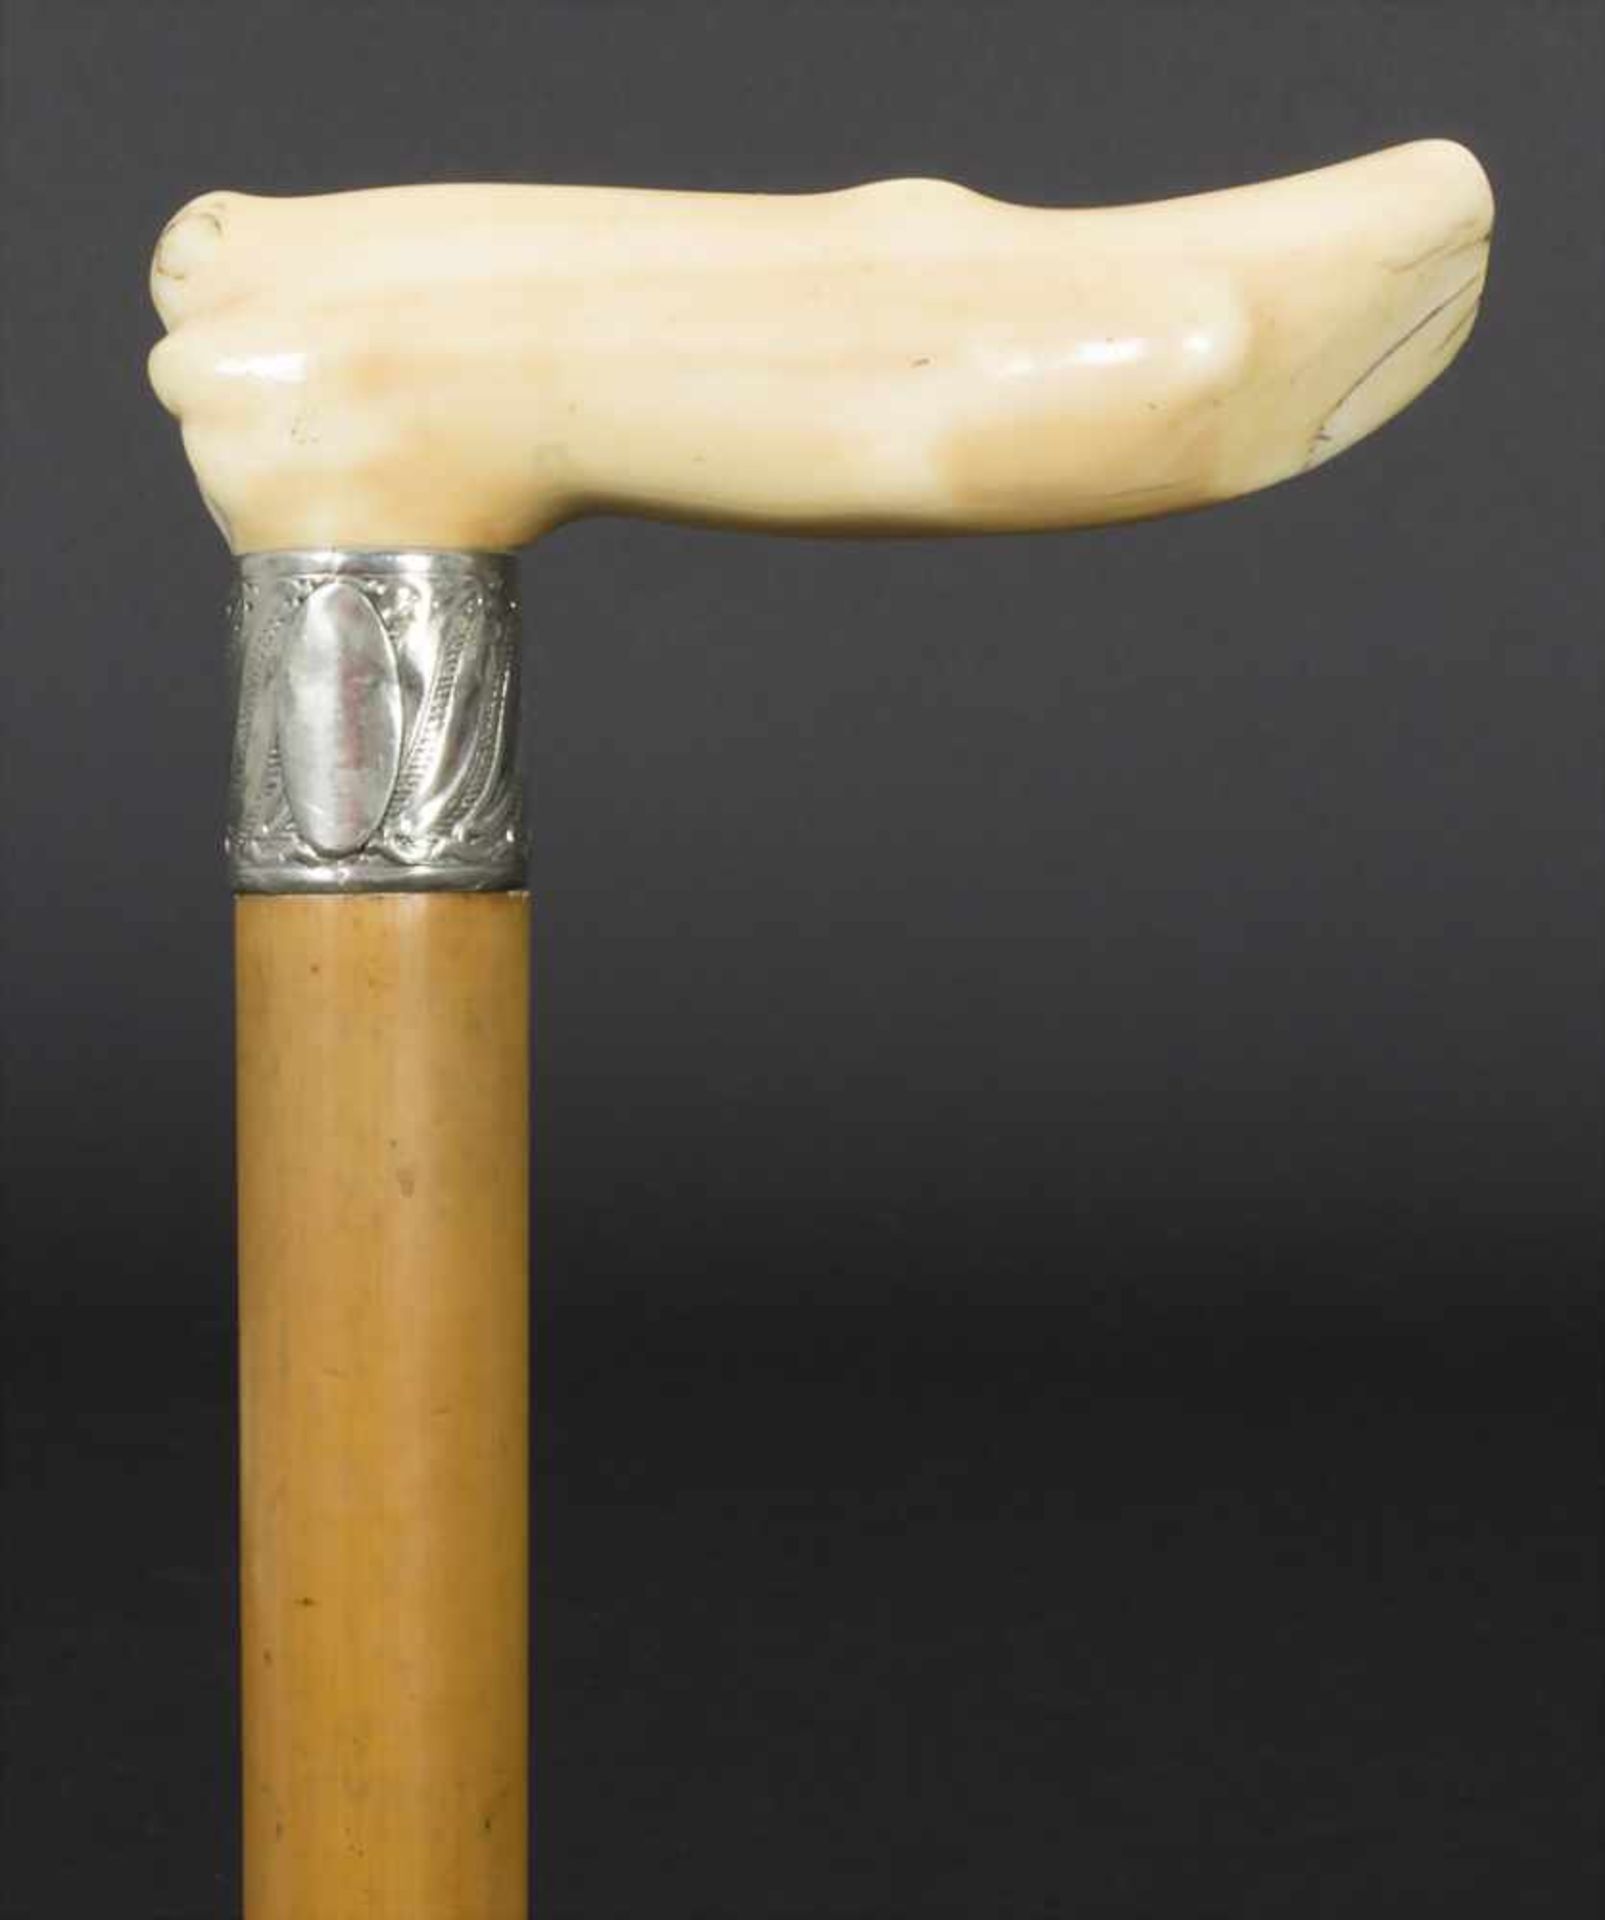 Gehstock mit Elfenbeingriff / A cane with ivory handle, um 1900Material: Malaccarohr (Schuss), - Bild 2 aus 5